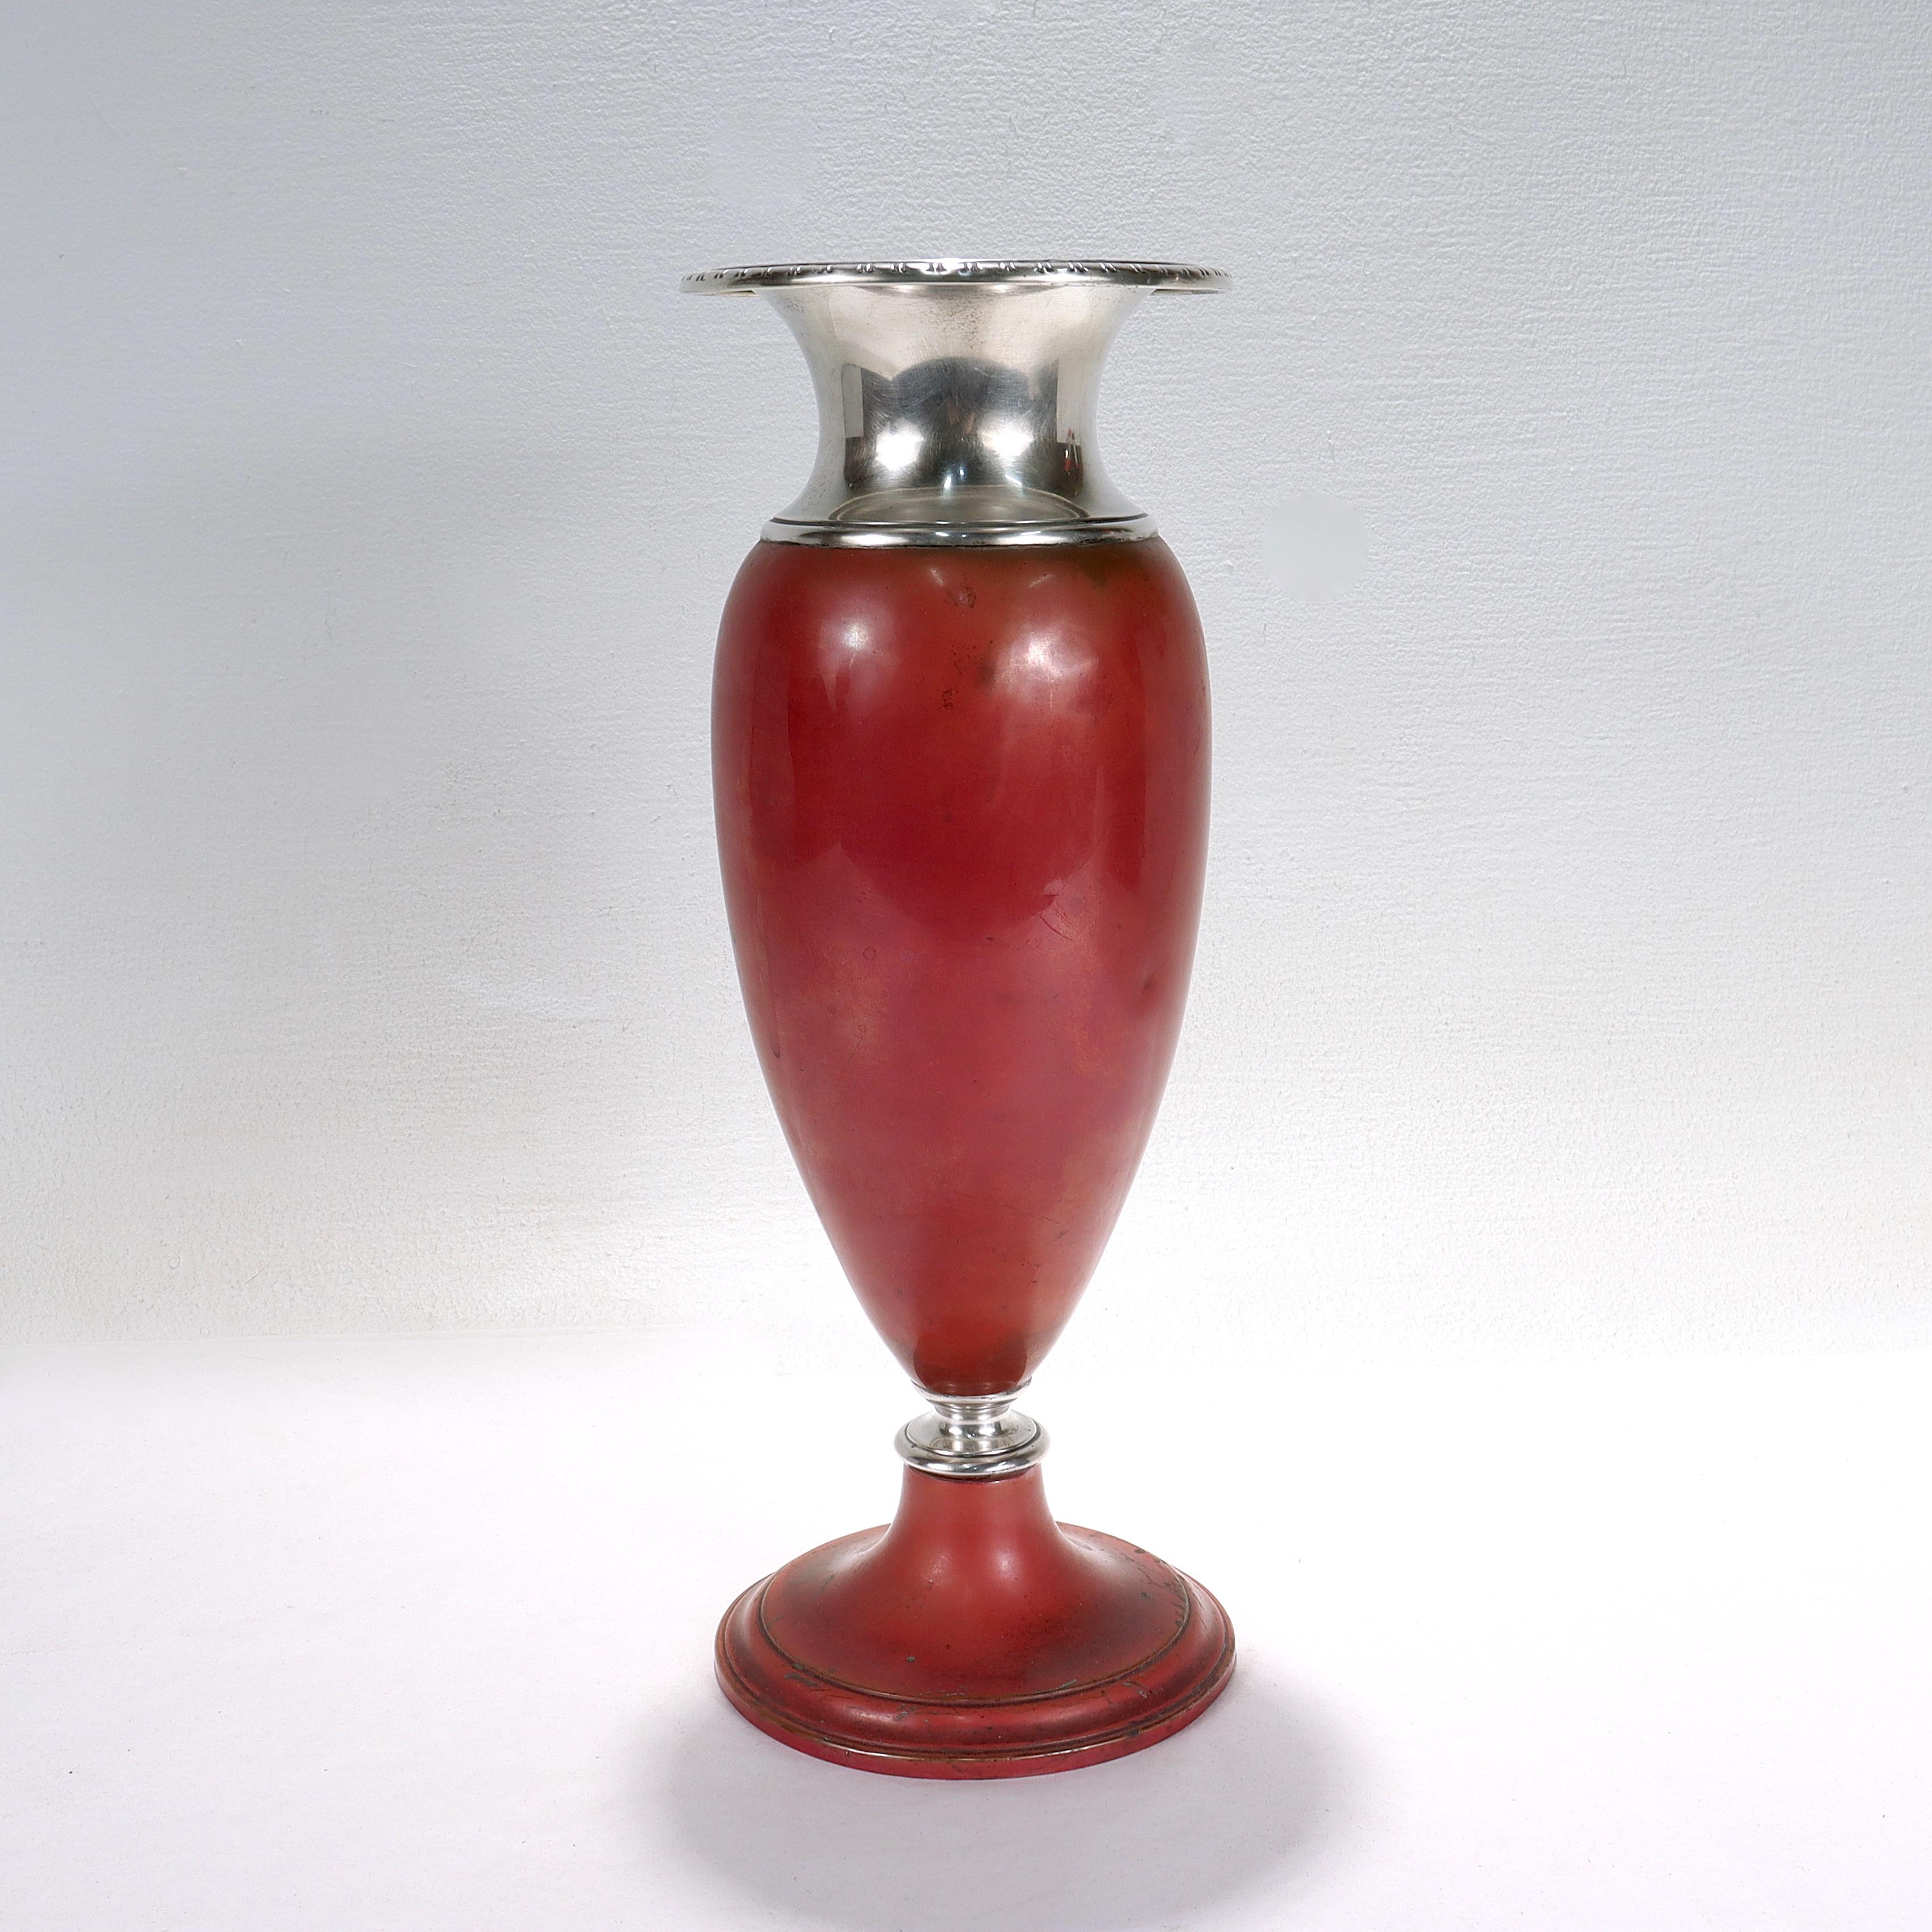 Vase en métaux mixtes de style Diptych Fine Arts.

De la ligne 